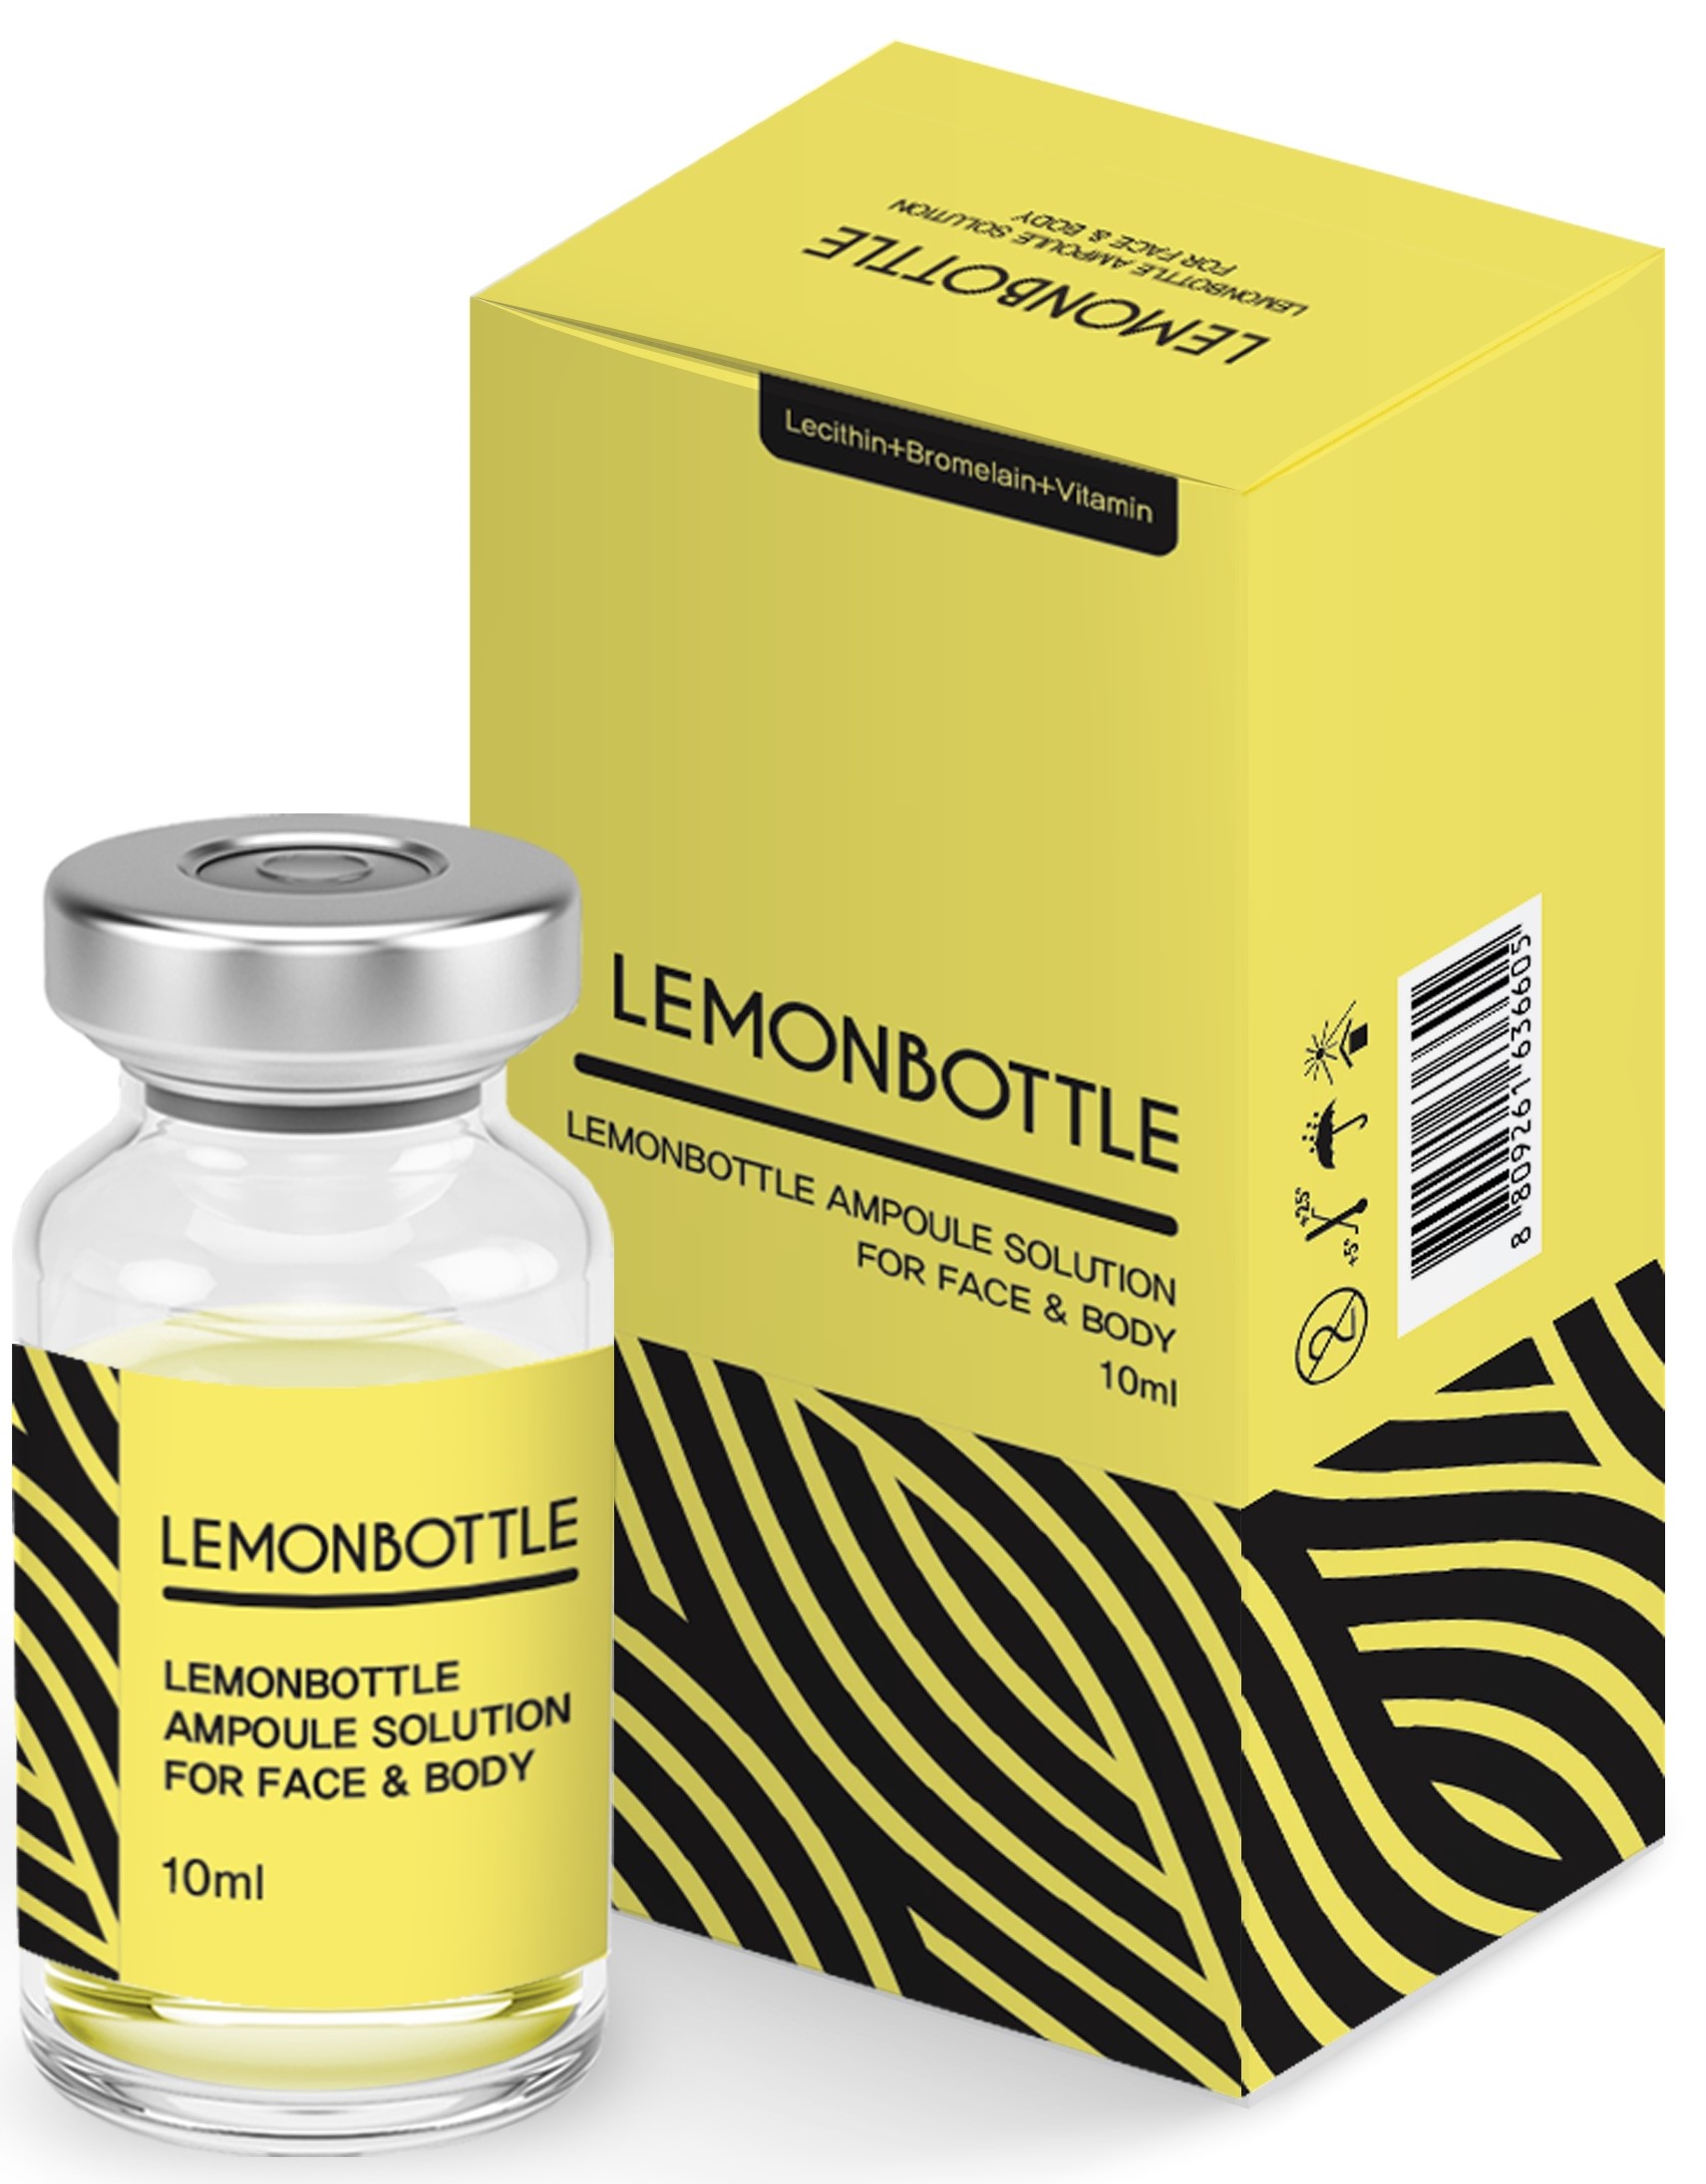 Image of the illigal product: Lemonbottle Lipolysis